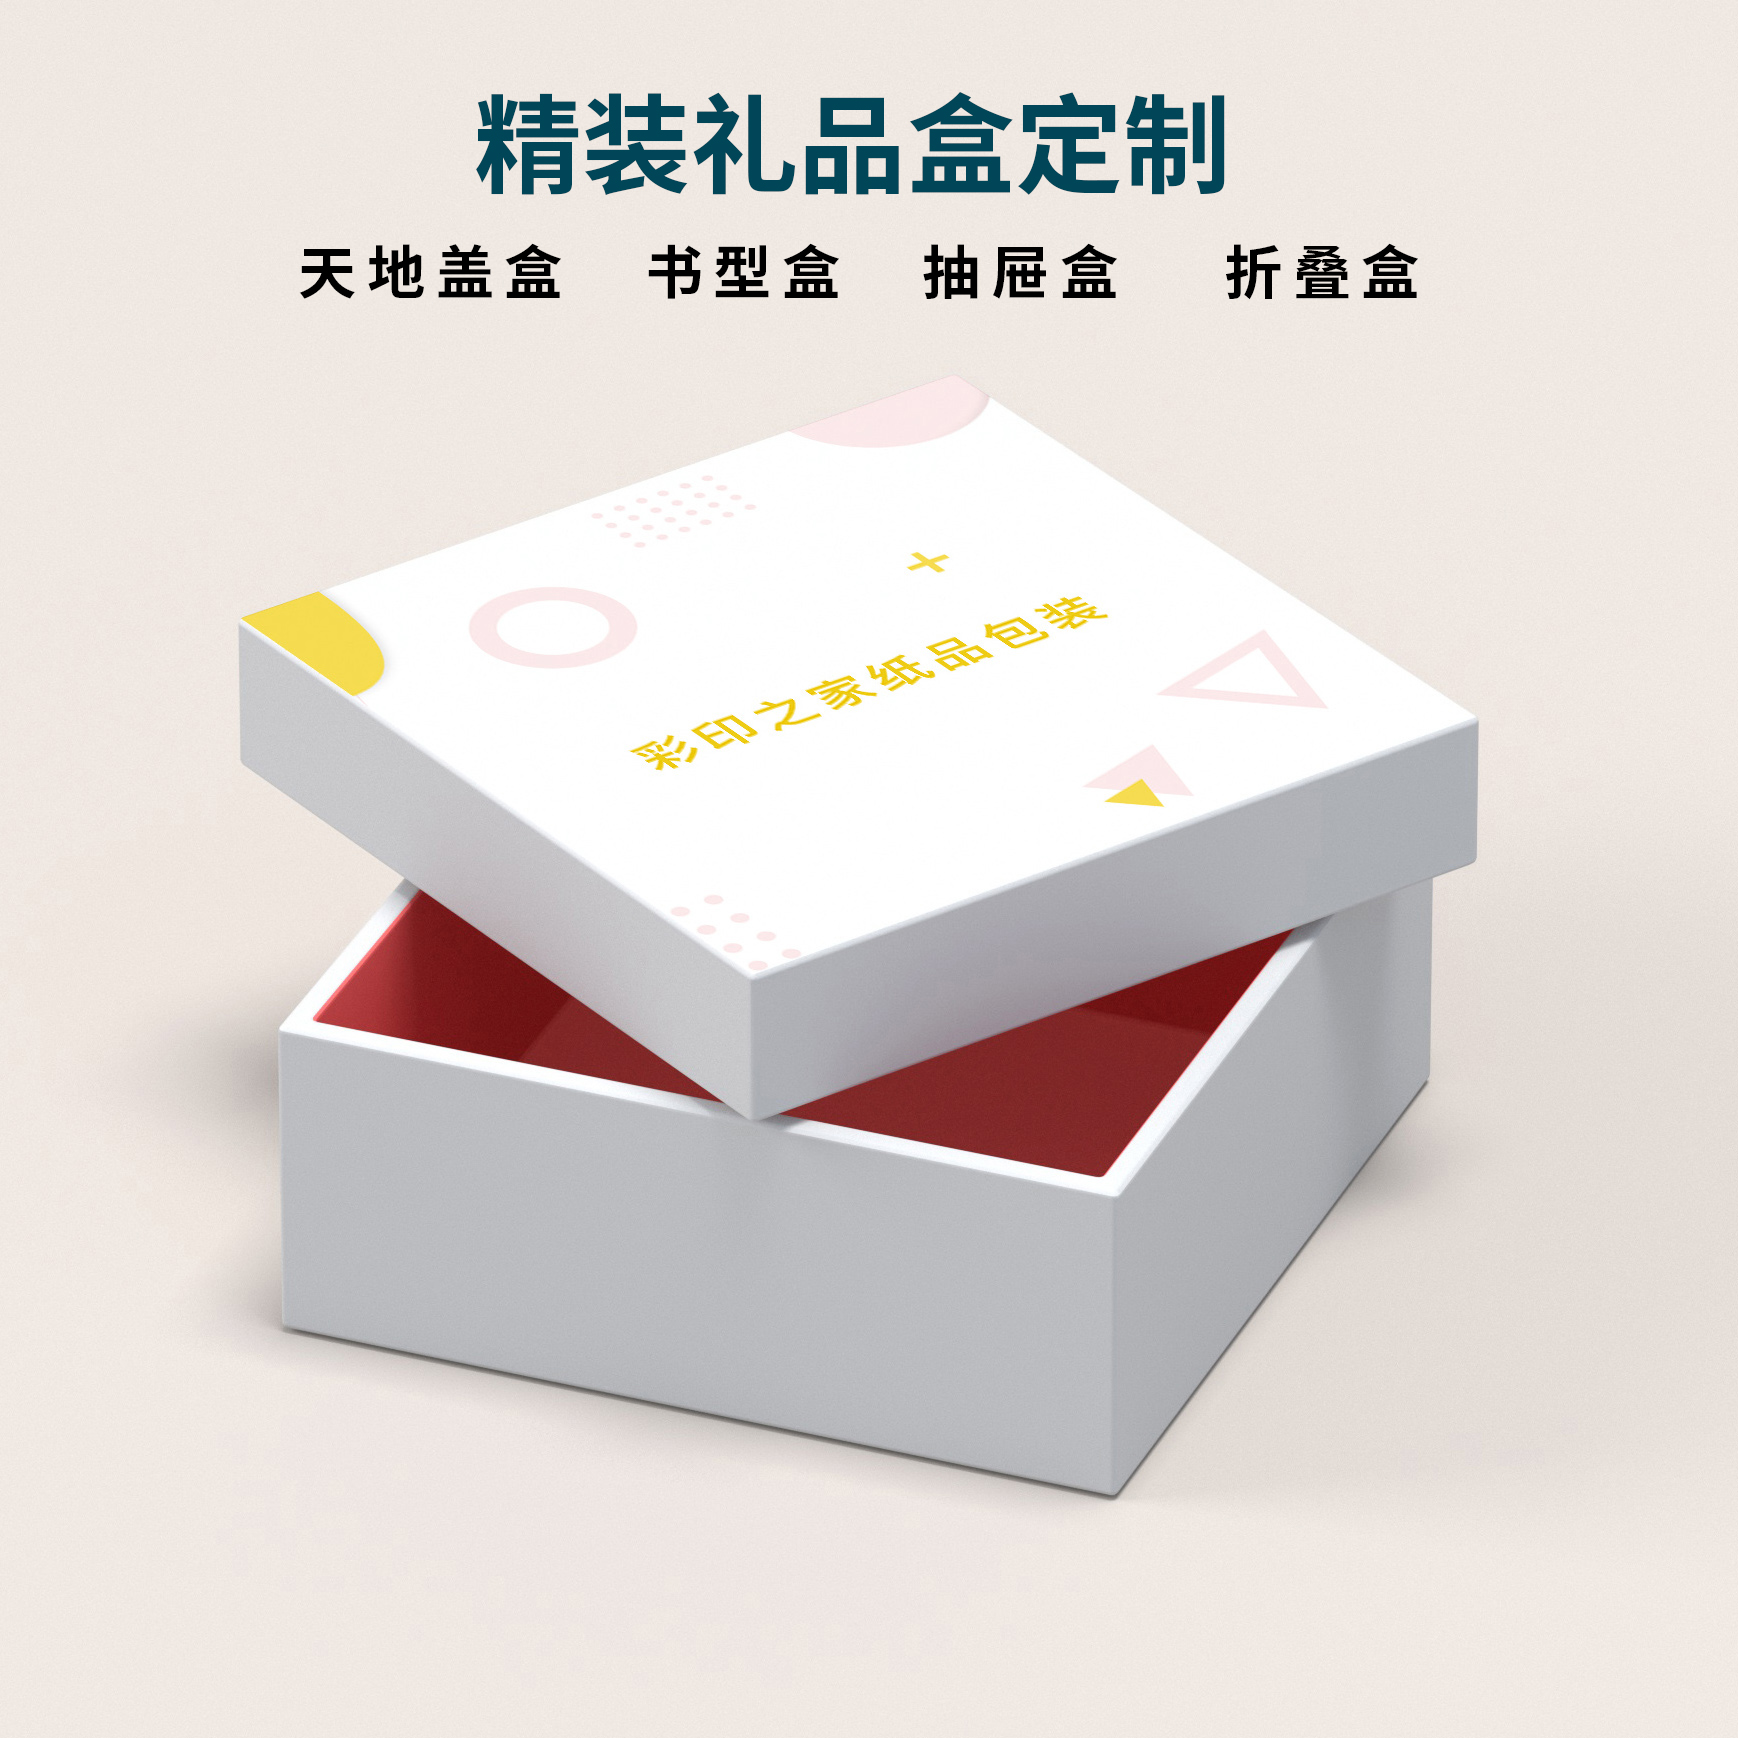 光盘盒印刷_郑州精品盒包装_郑州包装盒设计印刷公司